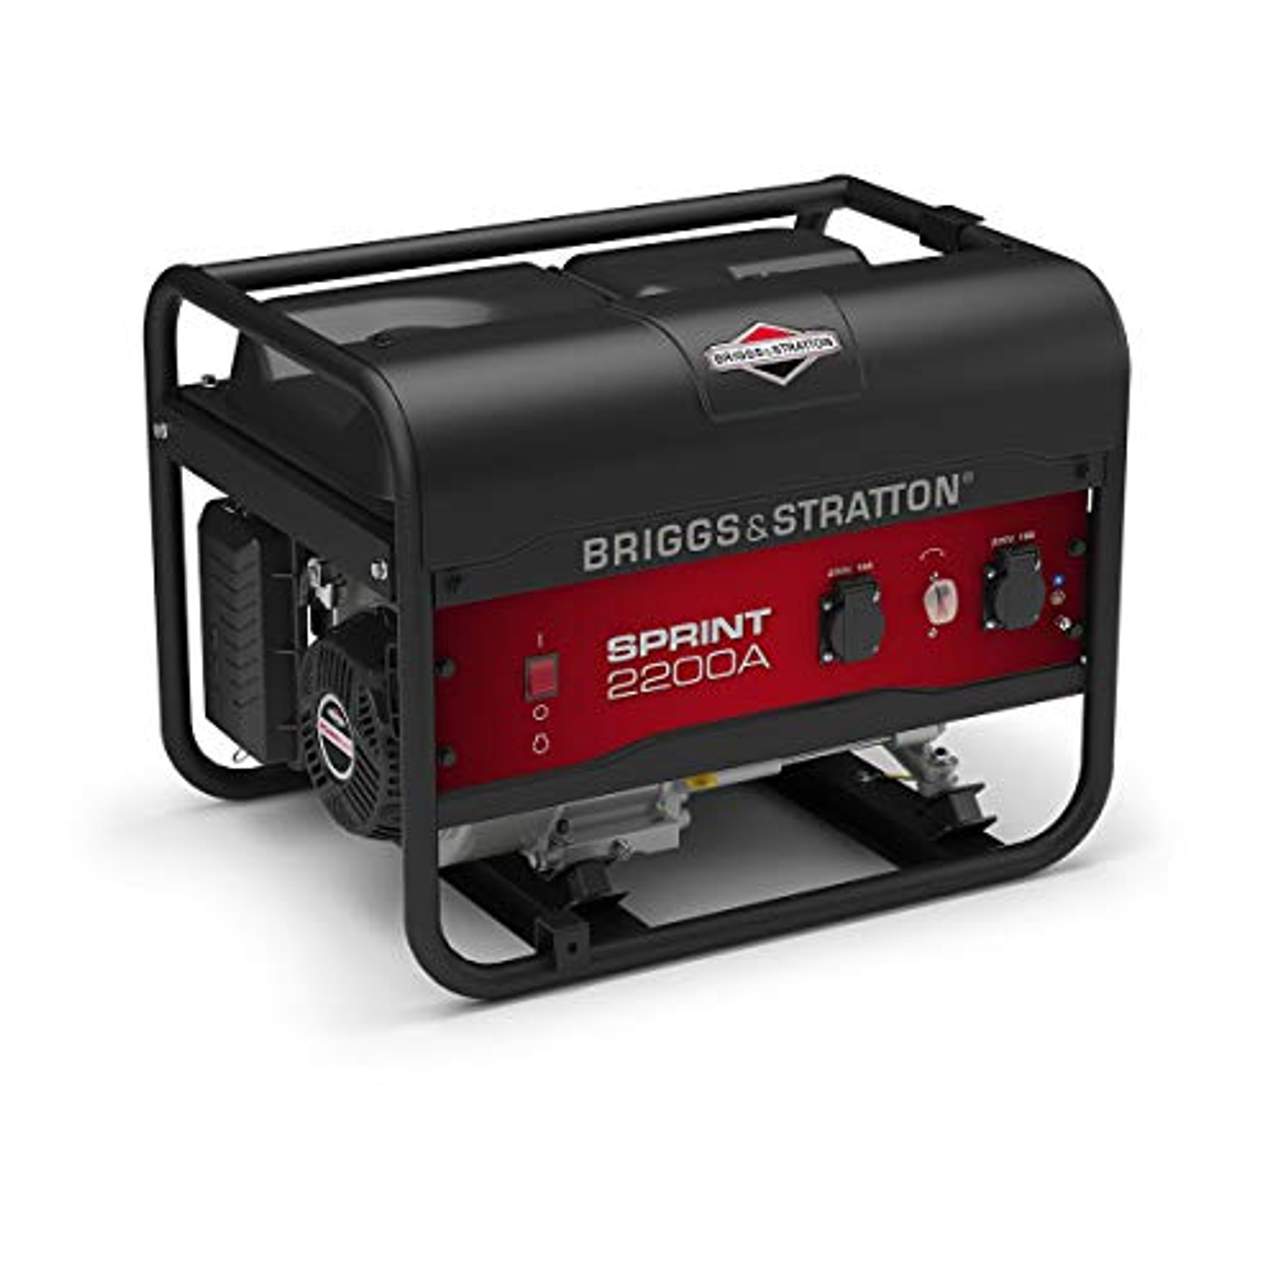 Briggs & Stratton Sprint 2200A tragbarer Stromerzeuger